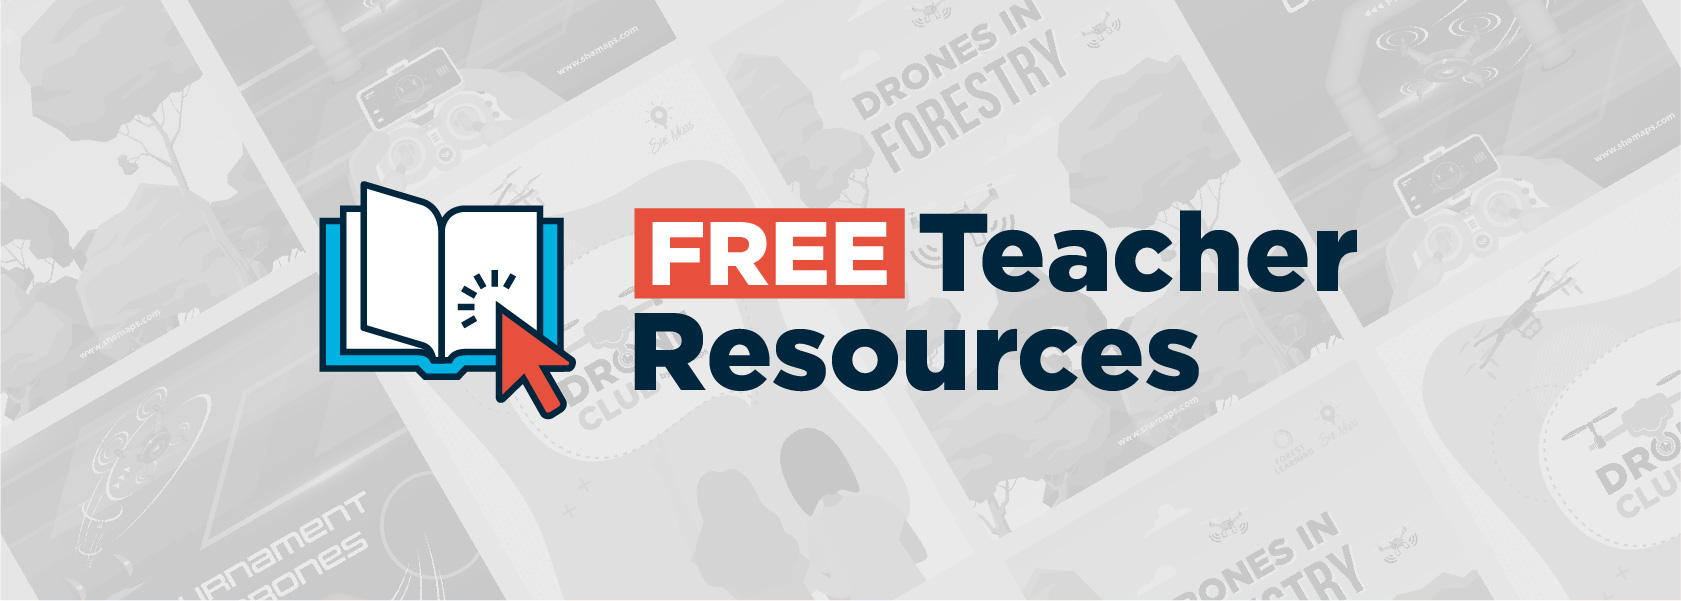 free teacher resources website banner